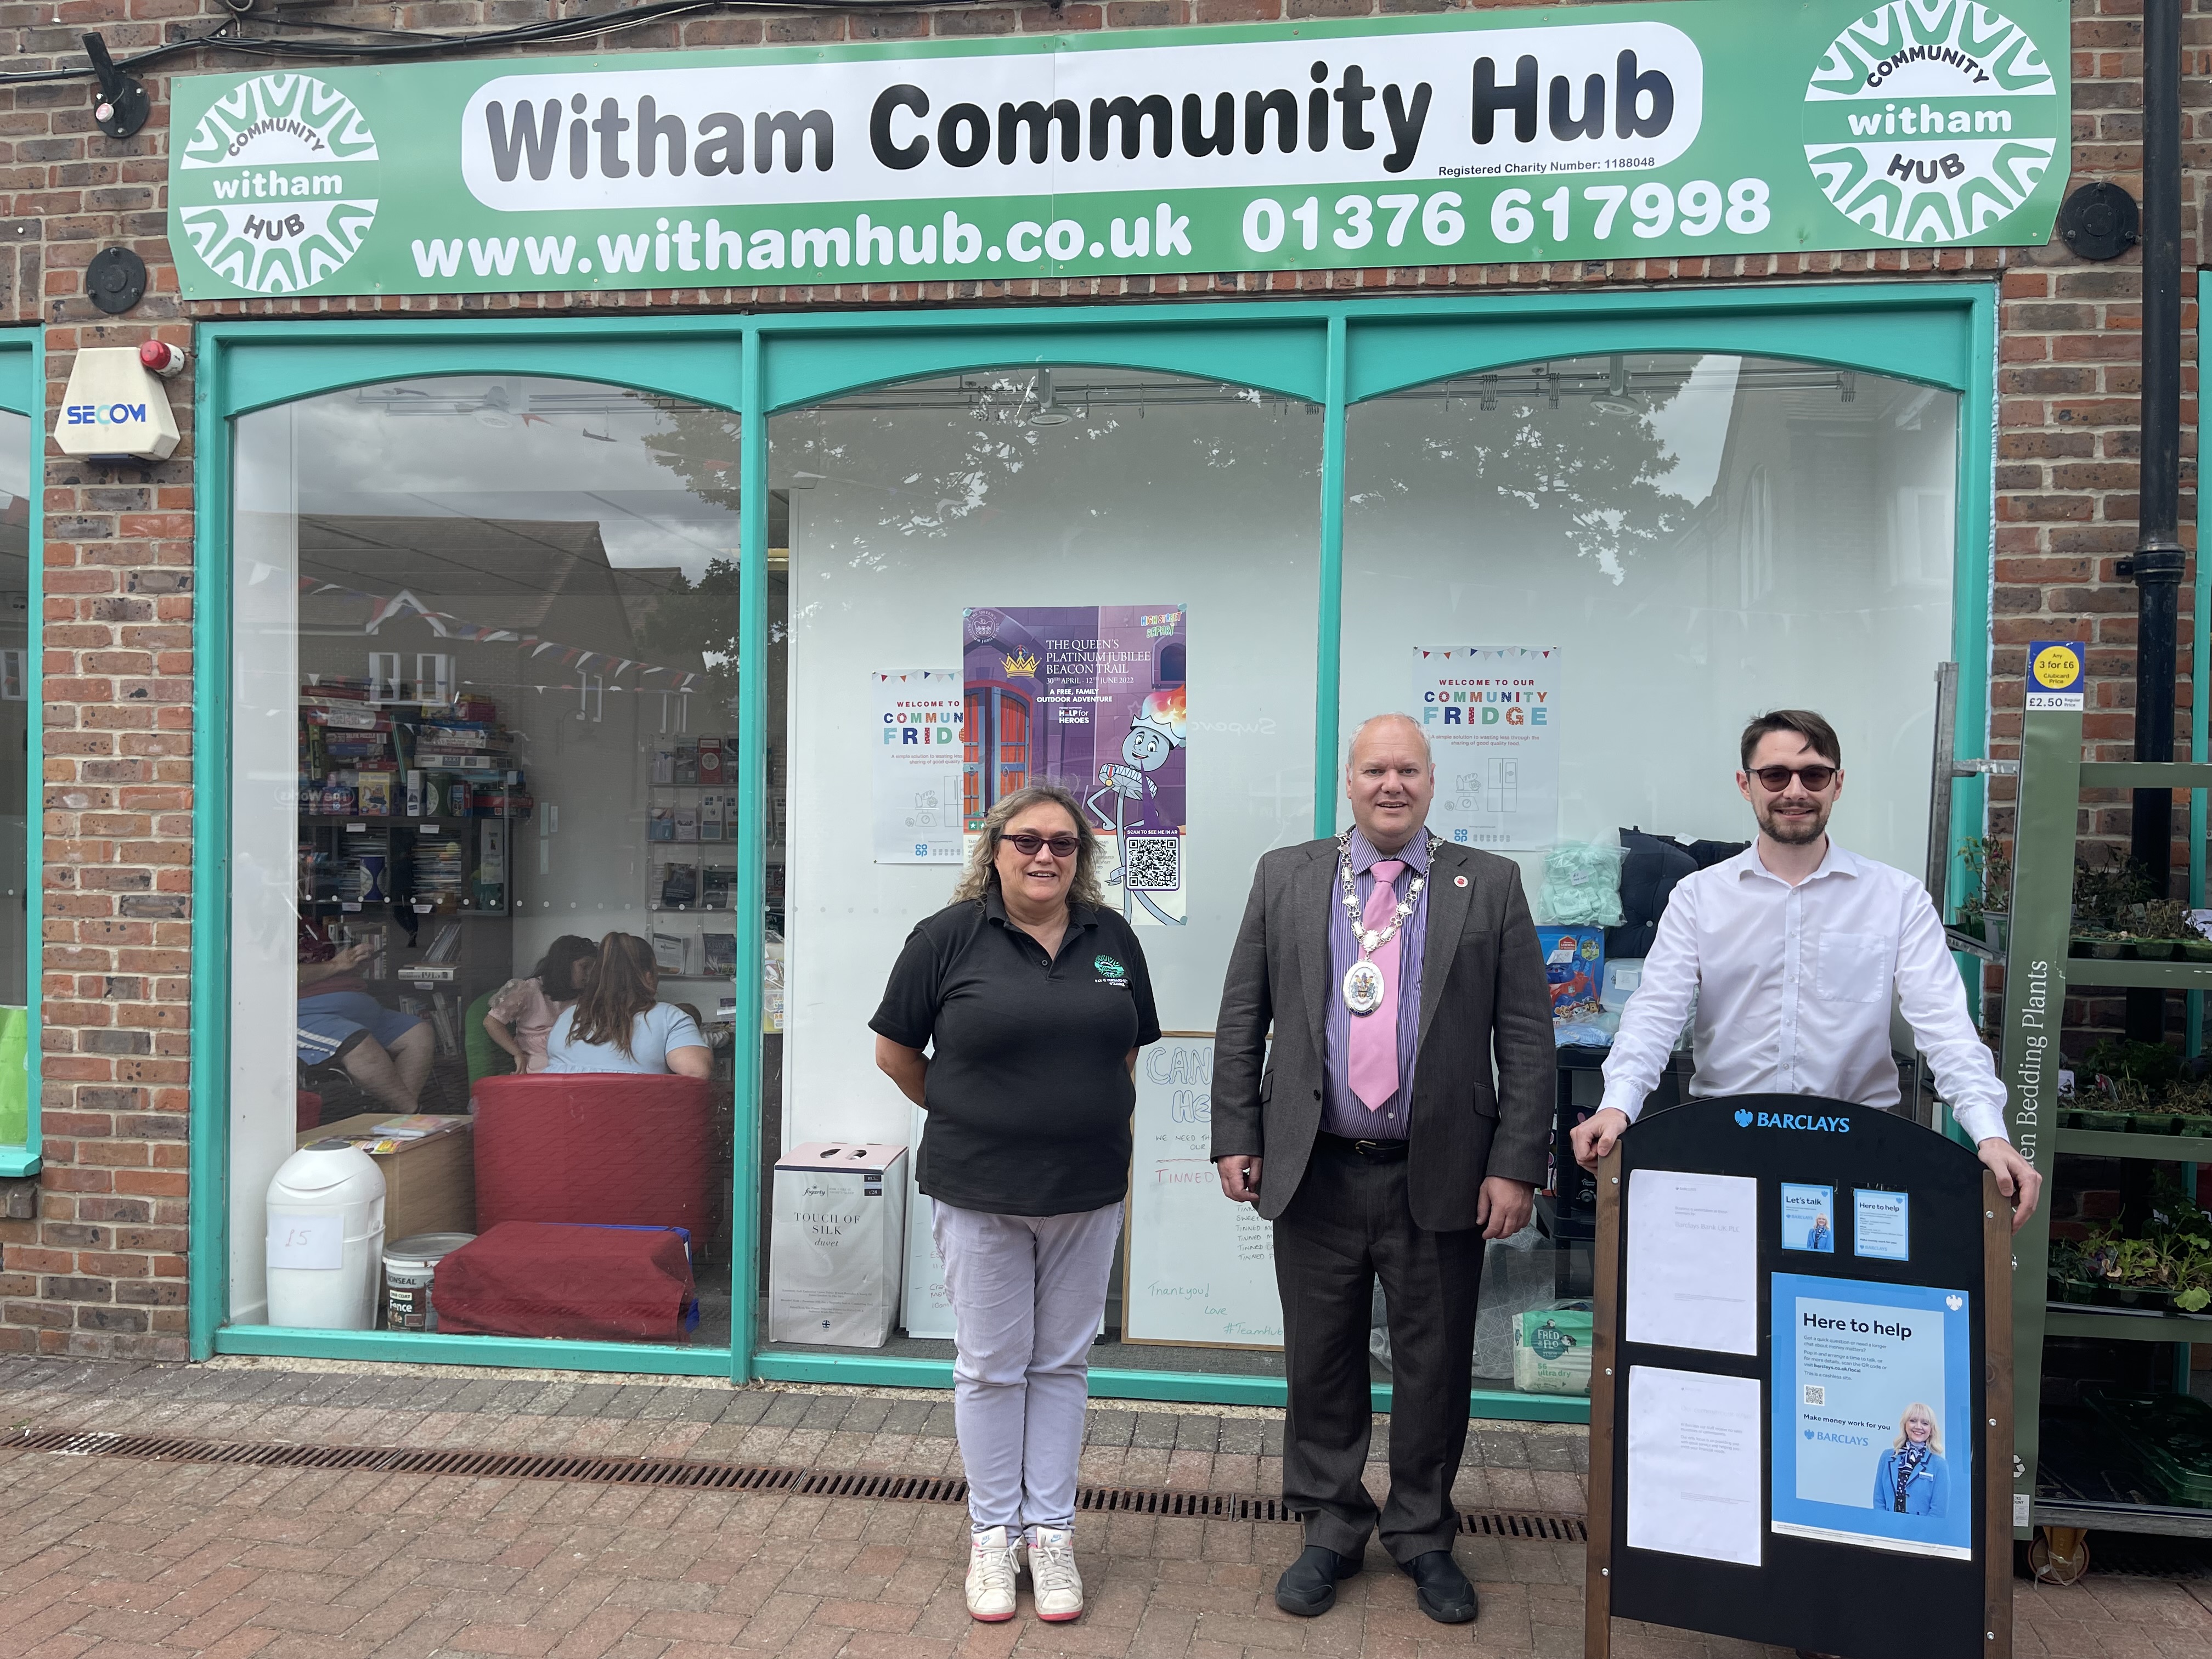 Witham community hub visit - Image